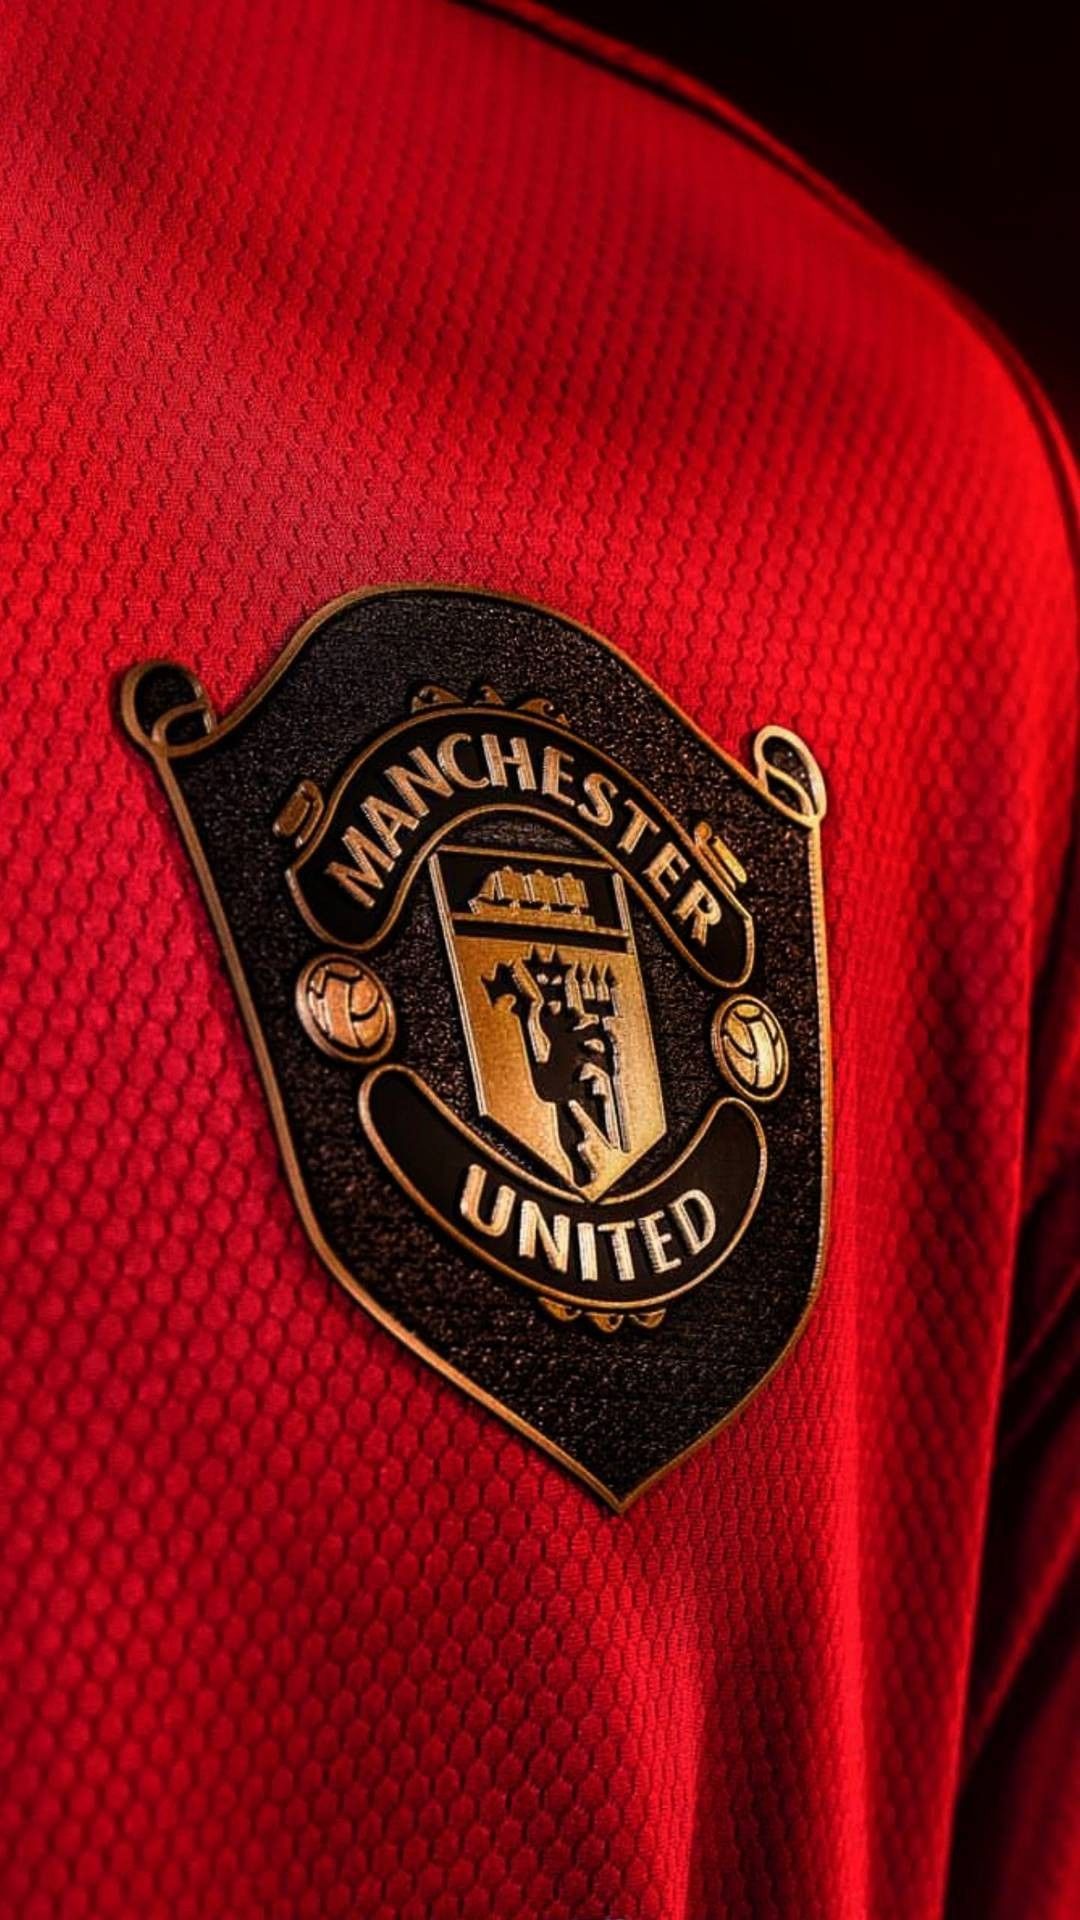 Man Utd wallpaper. Manchester united logo, Manchester united wallpaper, Manchester united